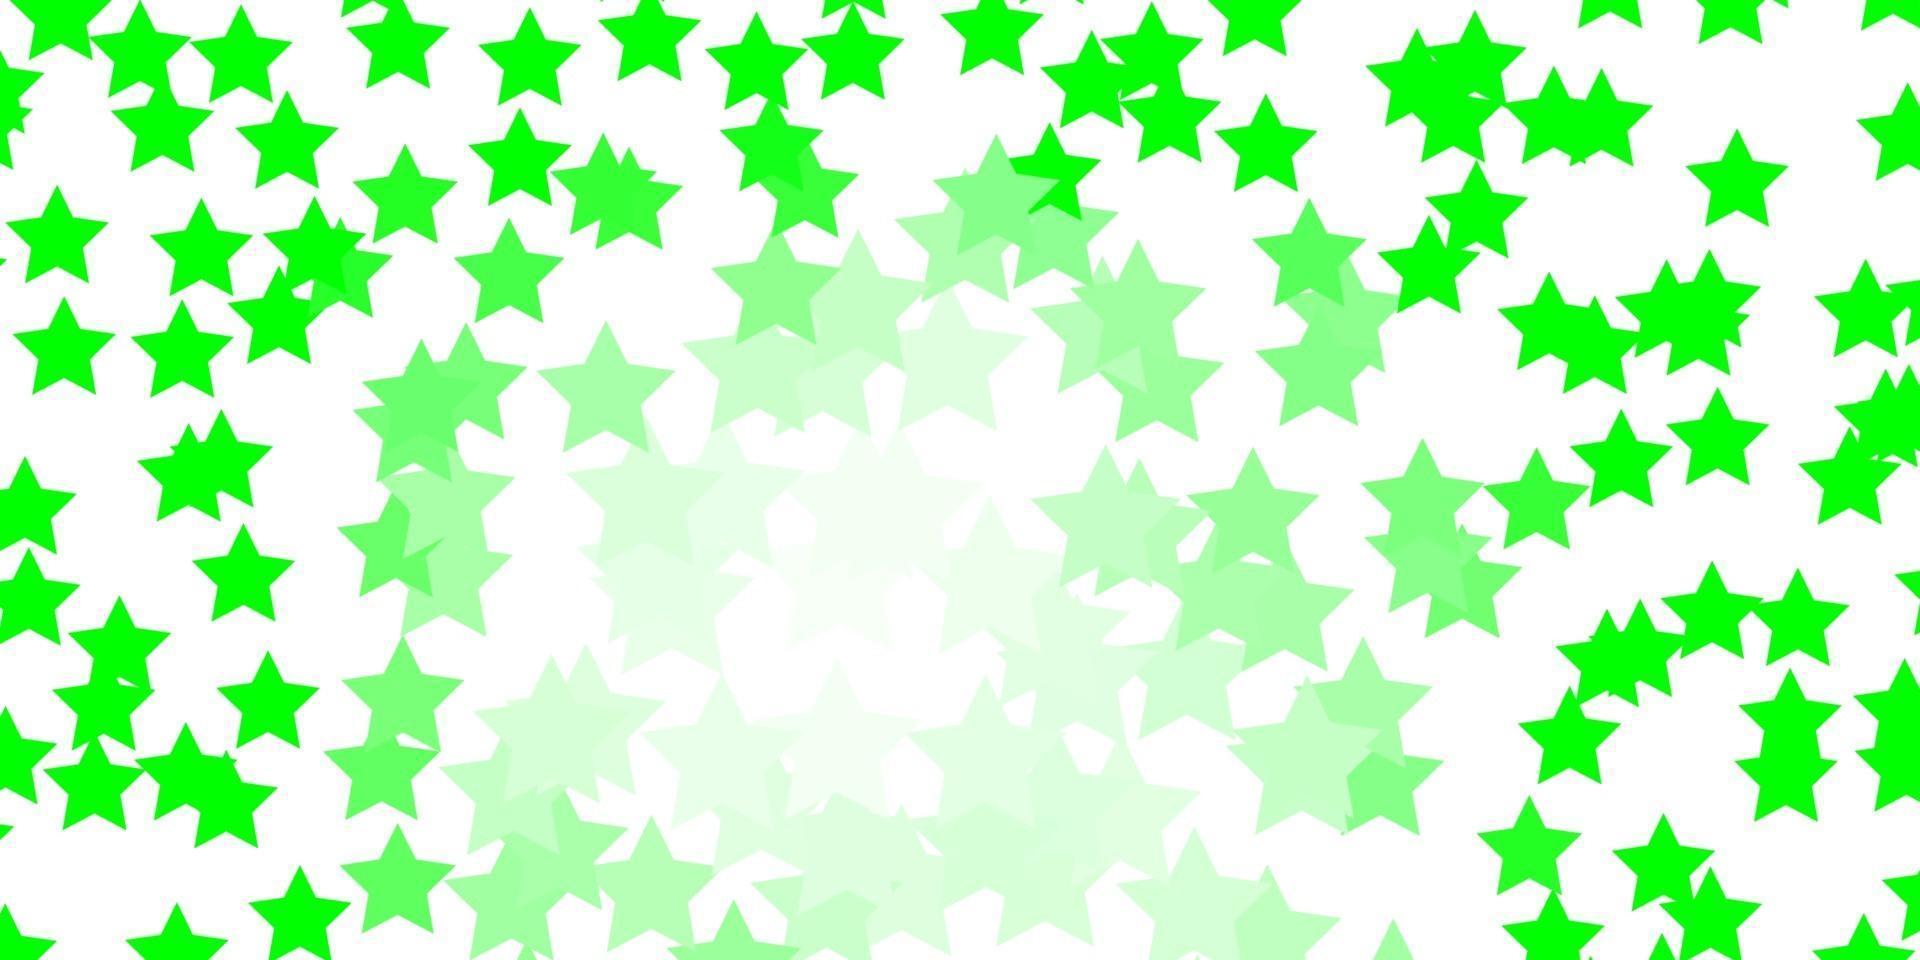 patrón de vector verde claro con estrellas abstractas.